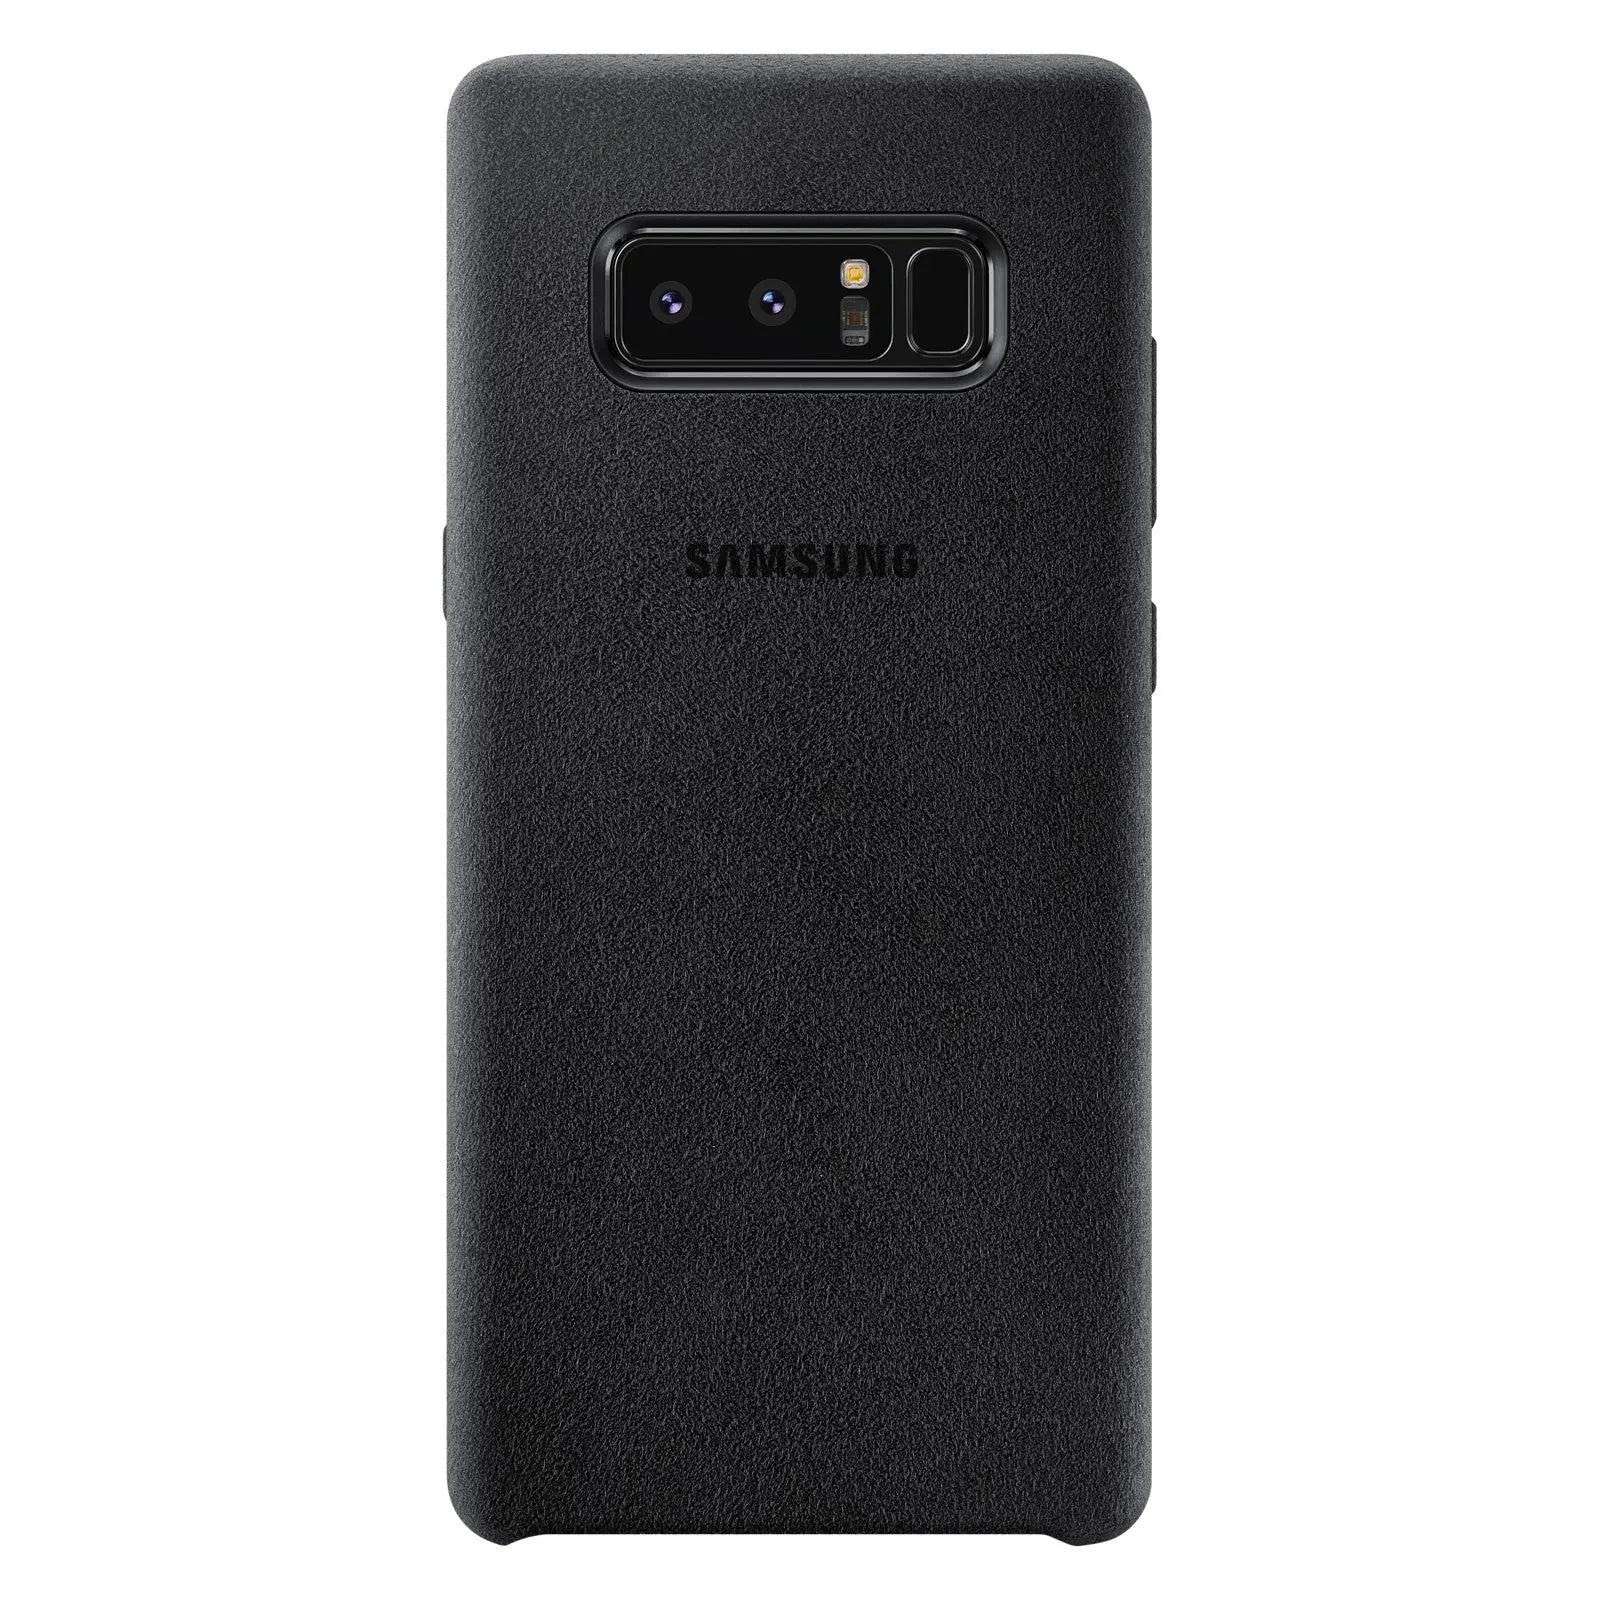 Samsung Coque Alcantara Noir Samsung Galaxy Note 8 8806088930886 Samsung